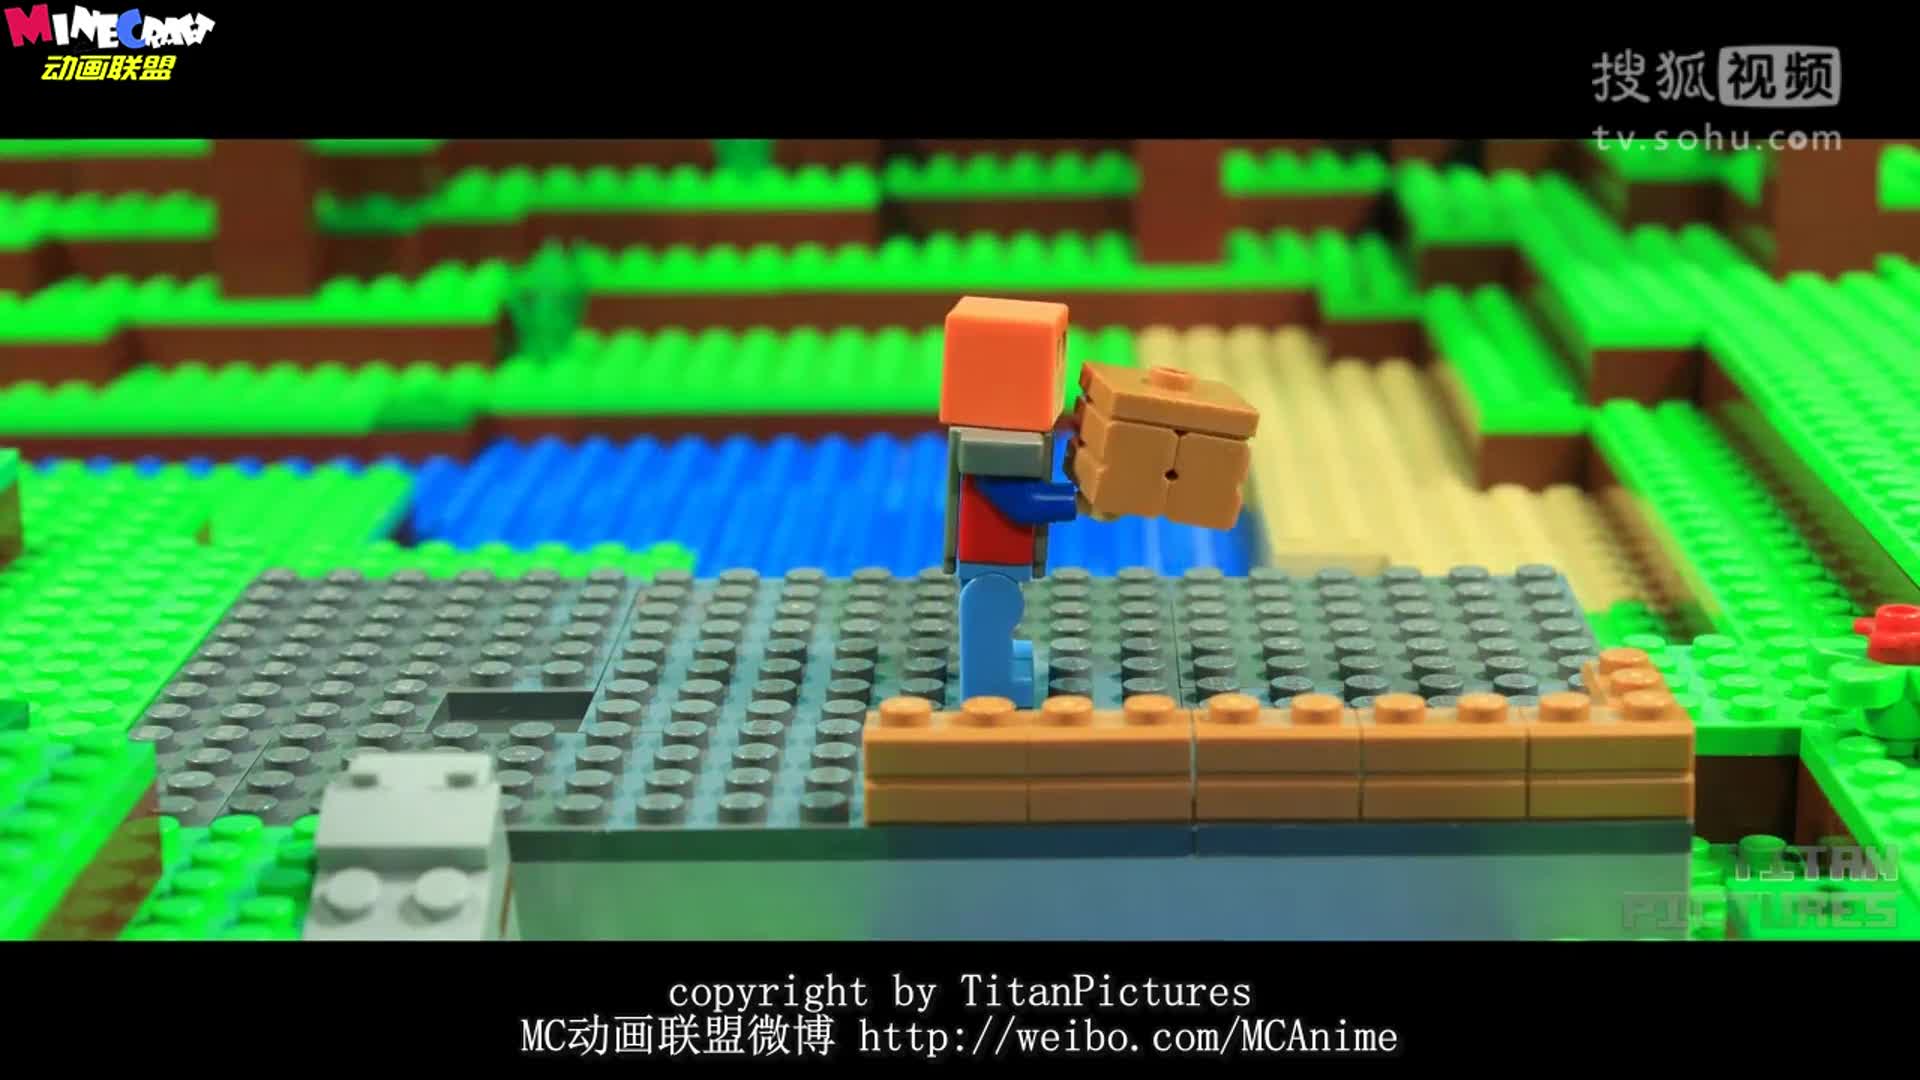 我的世界动画-乐高版mc生存日记-第36天-titanpictures